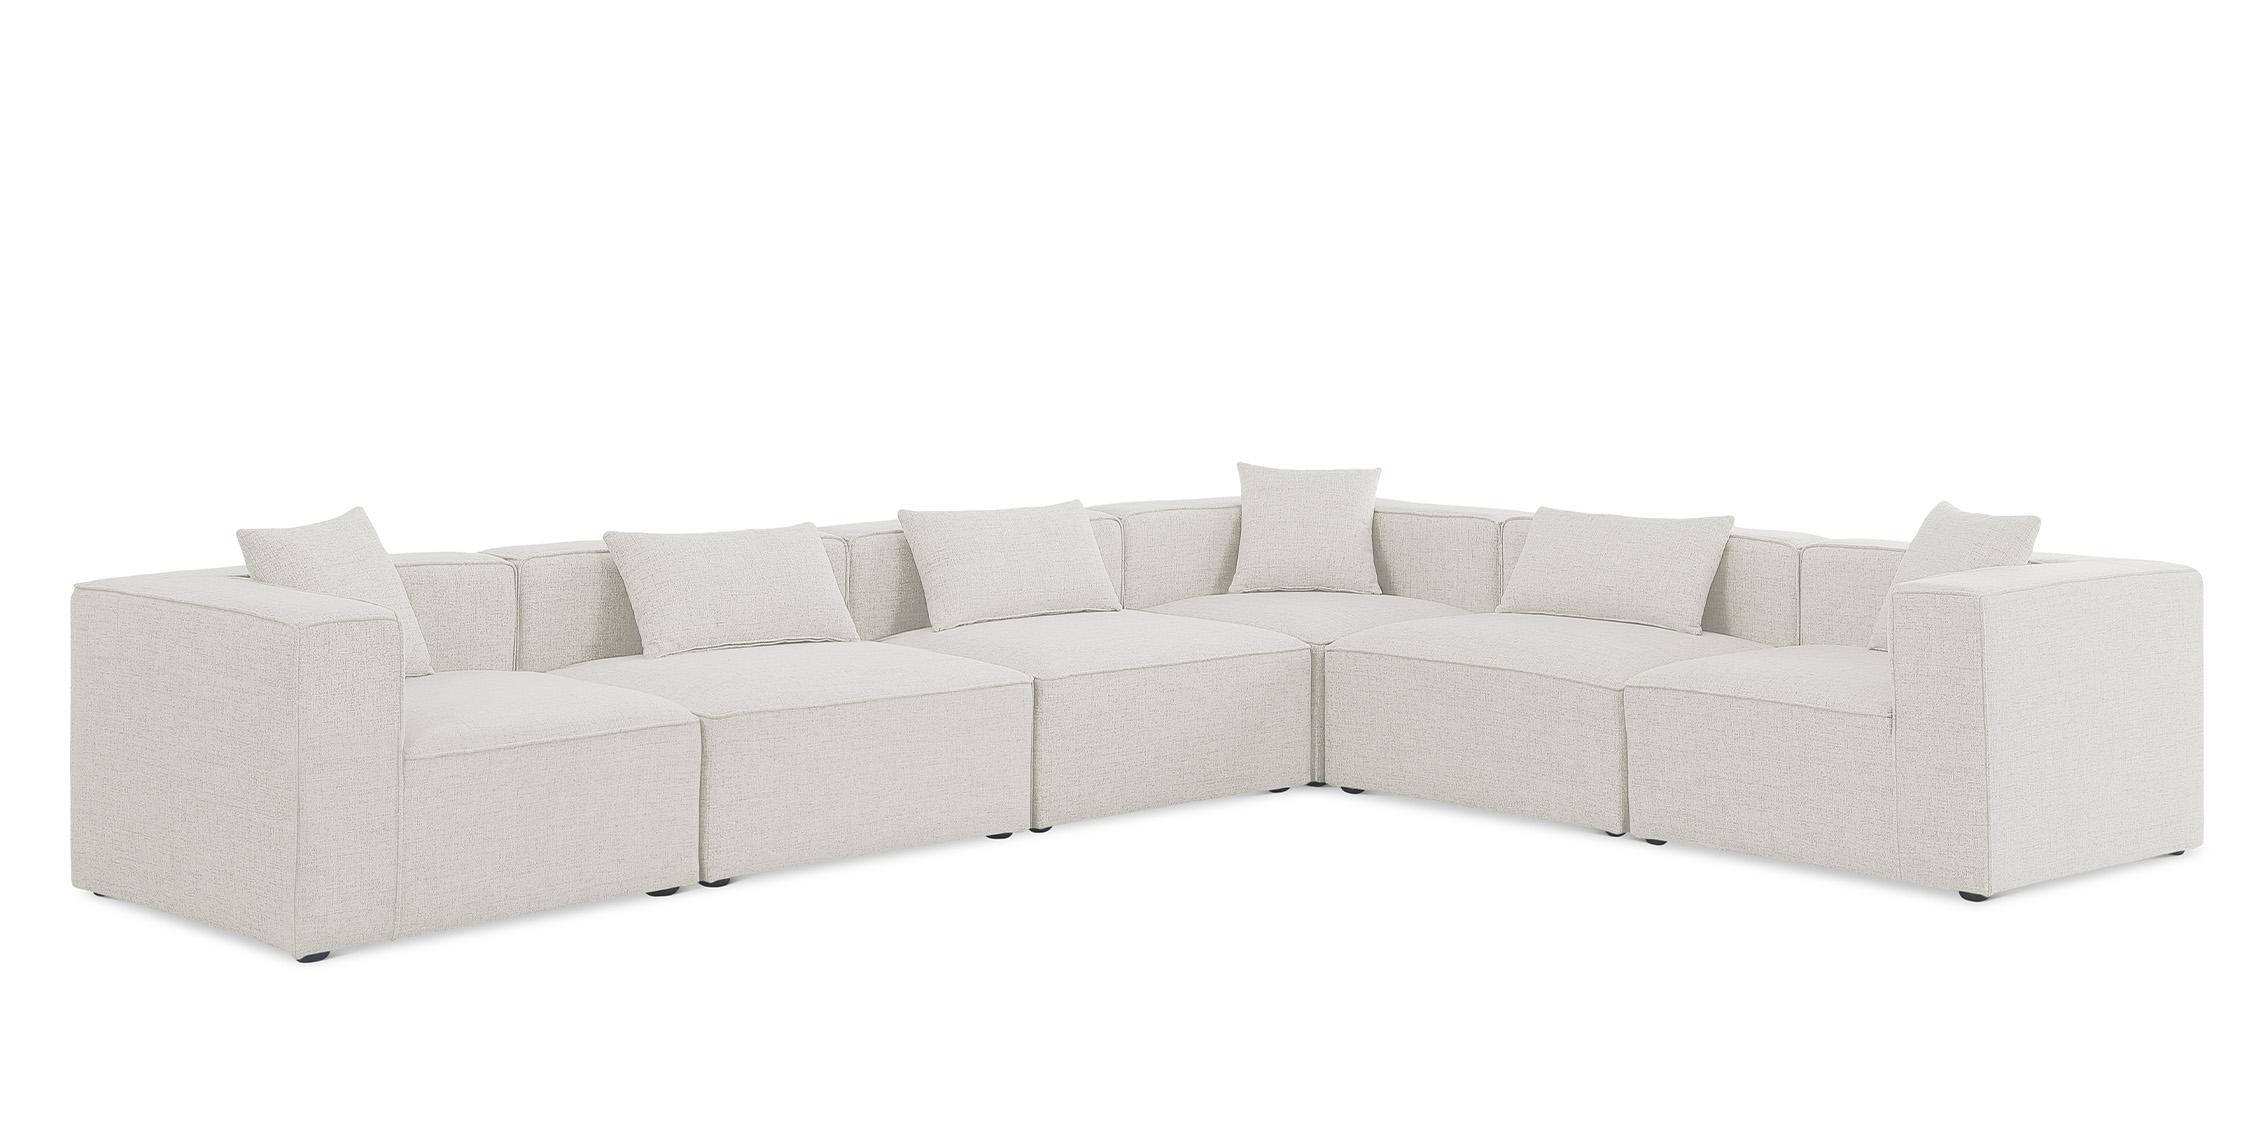 Contemporary, Modern Modular Sectional Sofa CUBE 630Cream-Sec6A 630Cream-Sec6A in Cream Linen